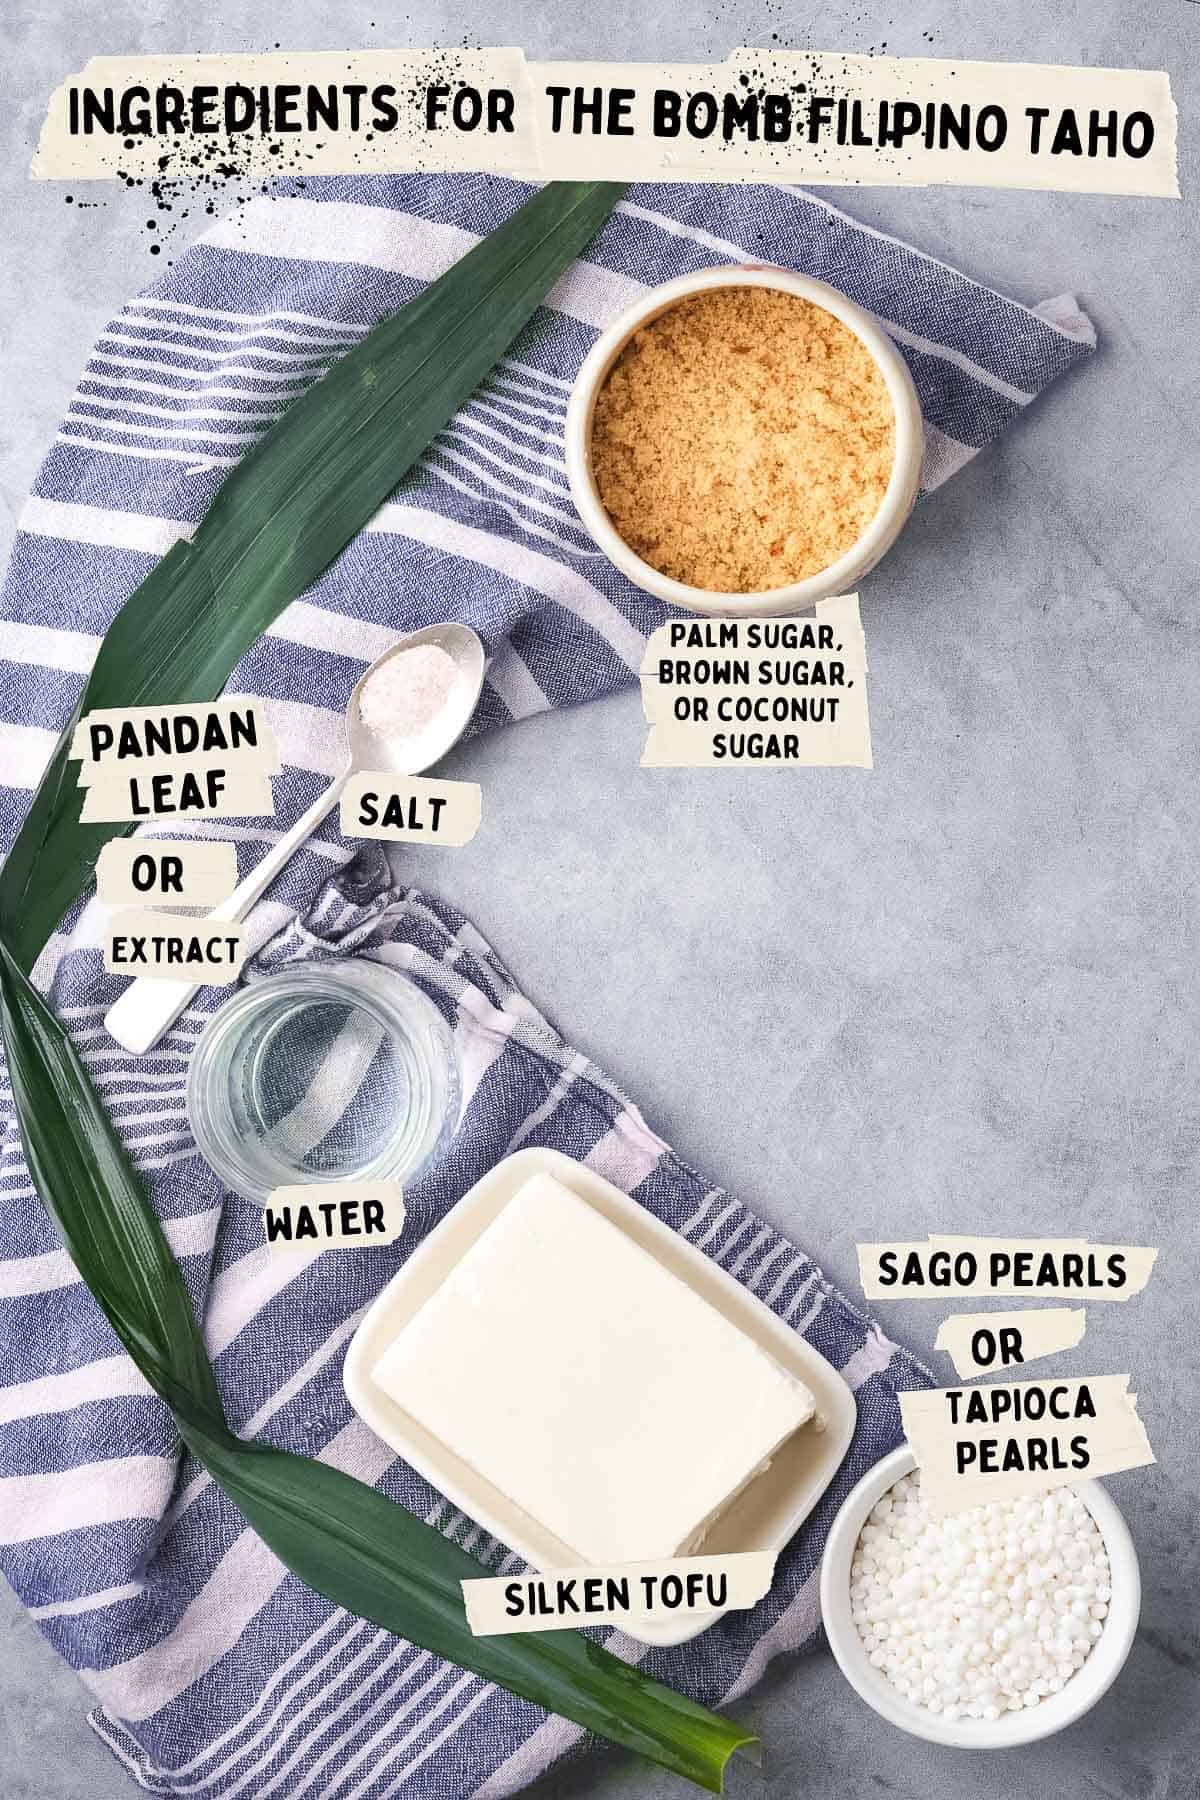 Ingredients for making Filipino Taho